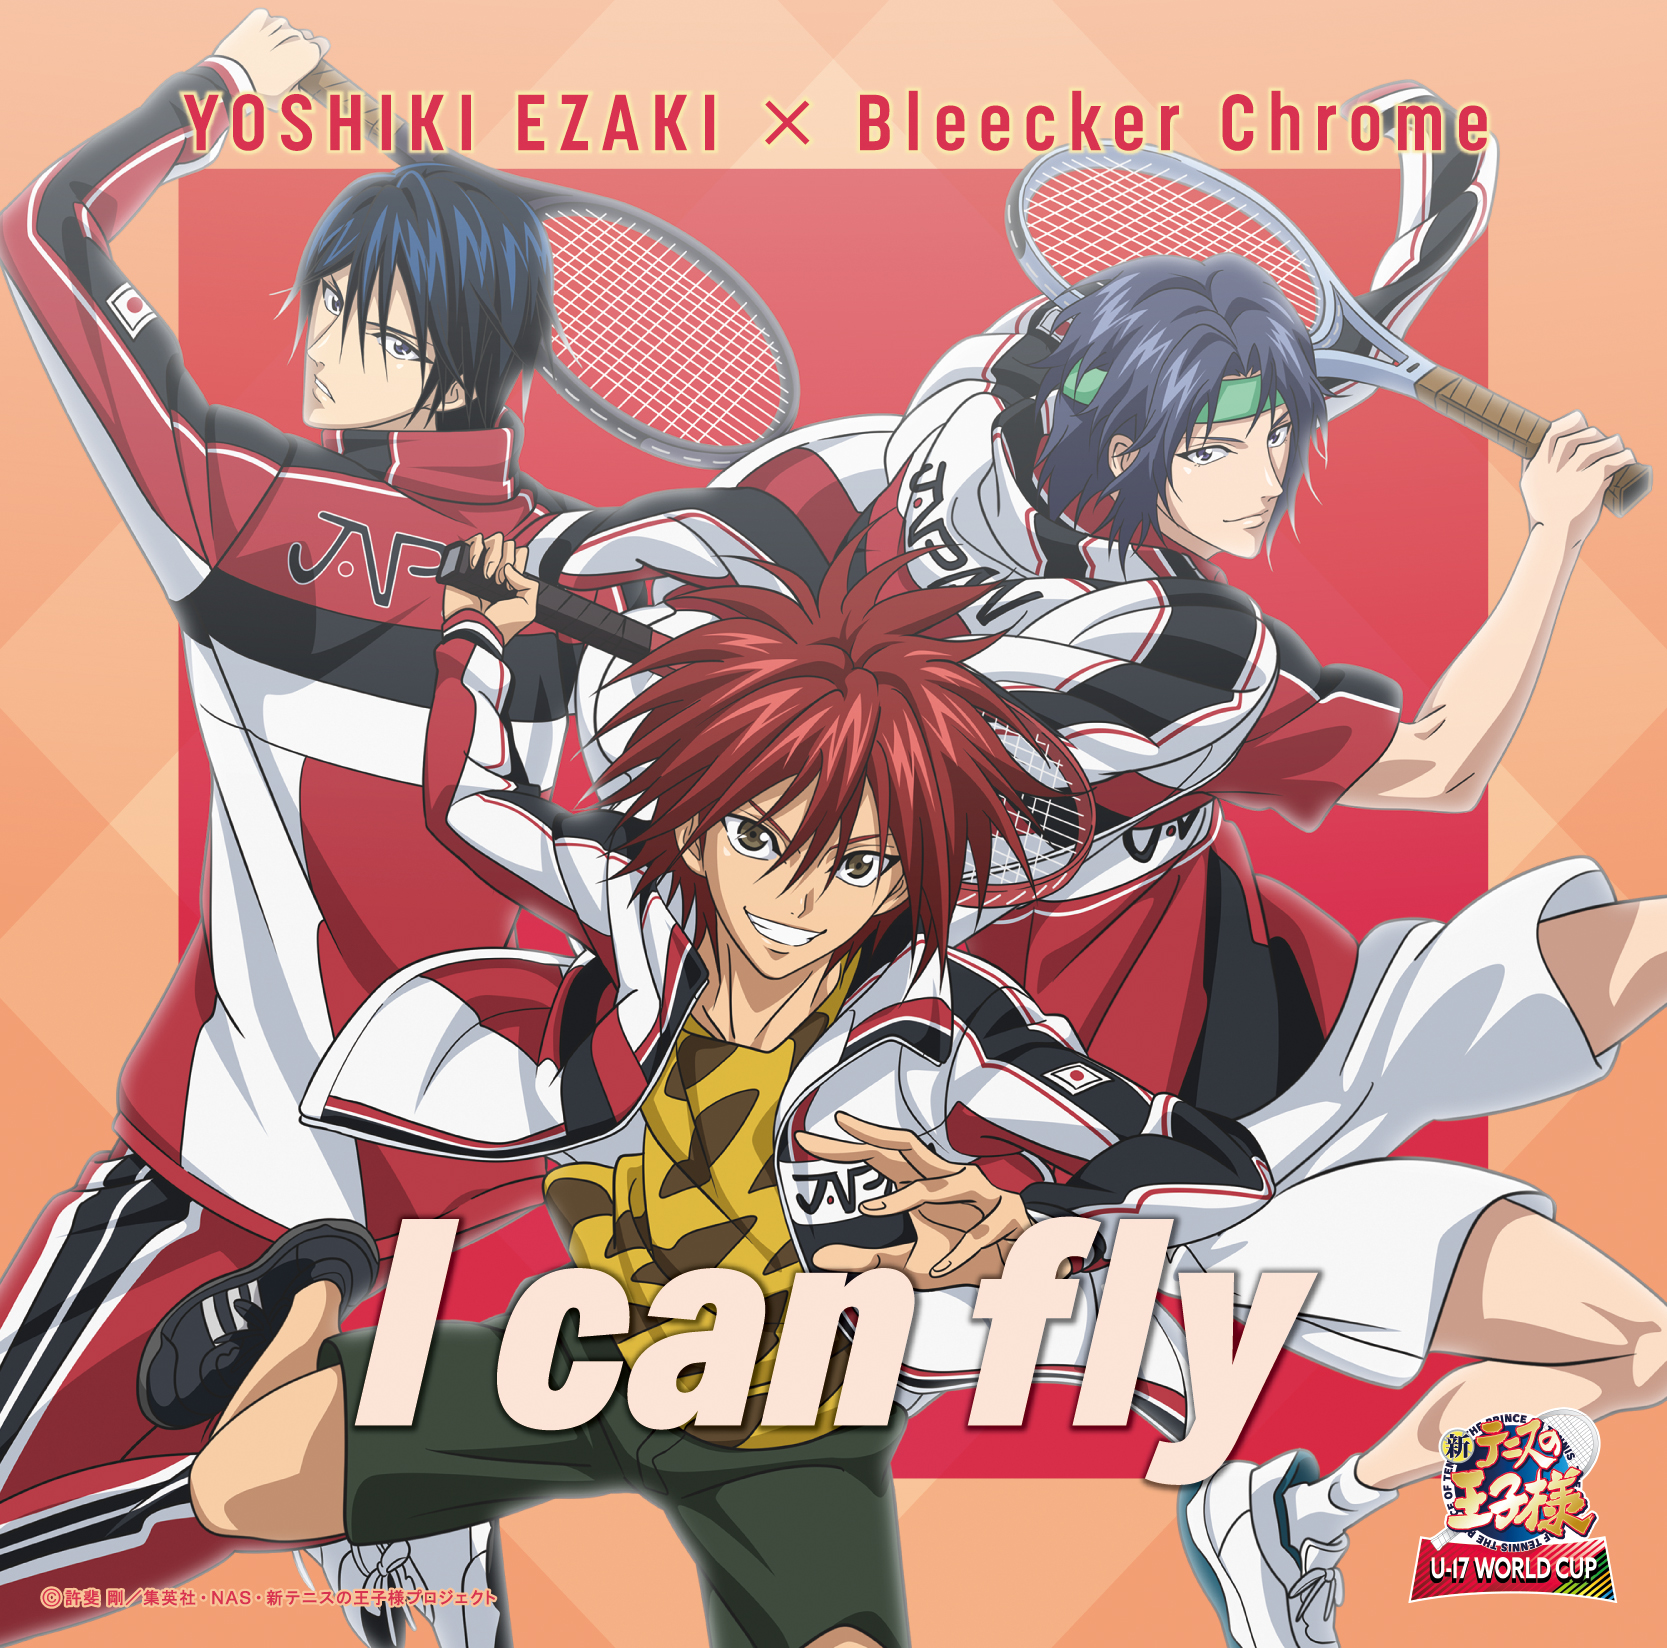 YOSHIKI EZAKI x Bleecker Chrome「I can fly」(TYPE-C)